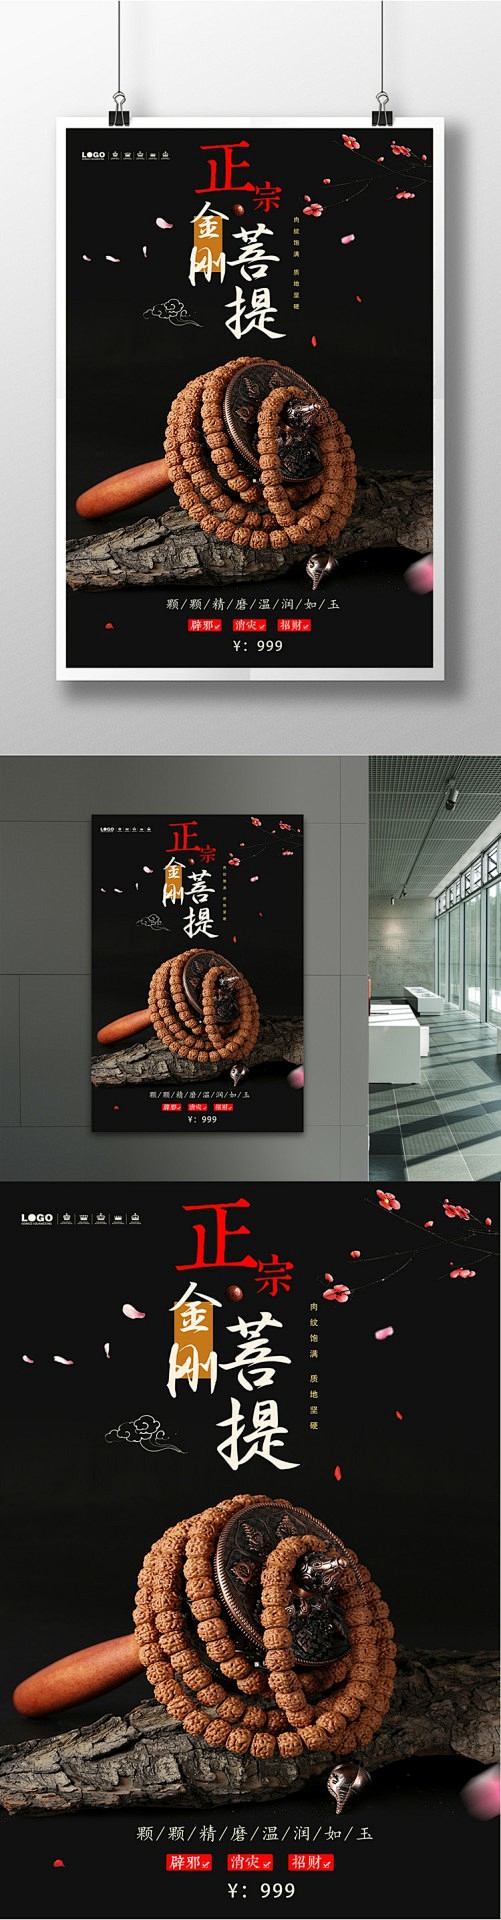 古典中国风金刚菩提手链饰品宣传海报设计千...